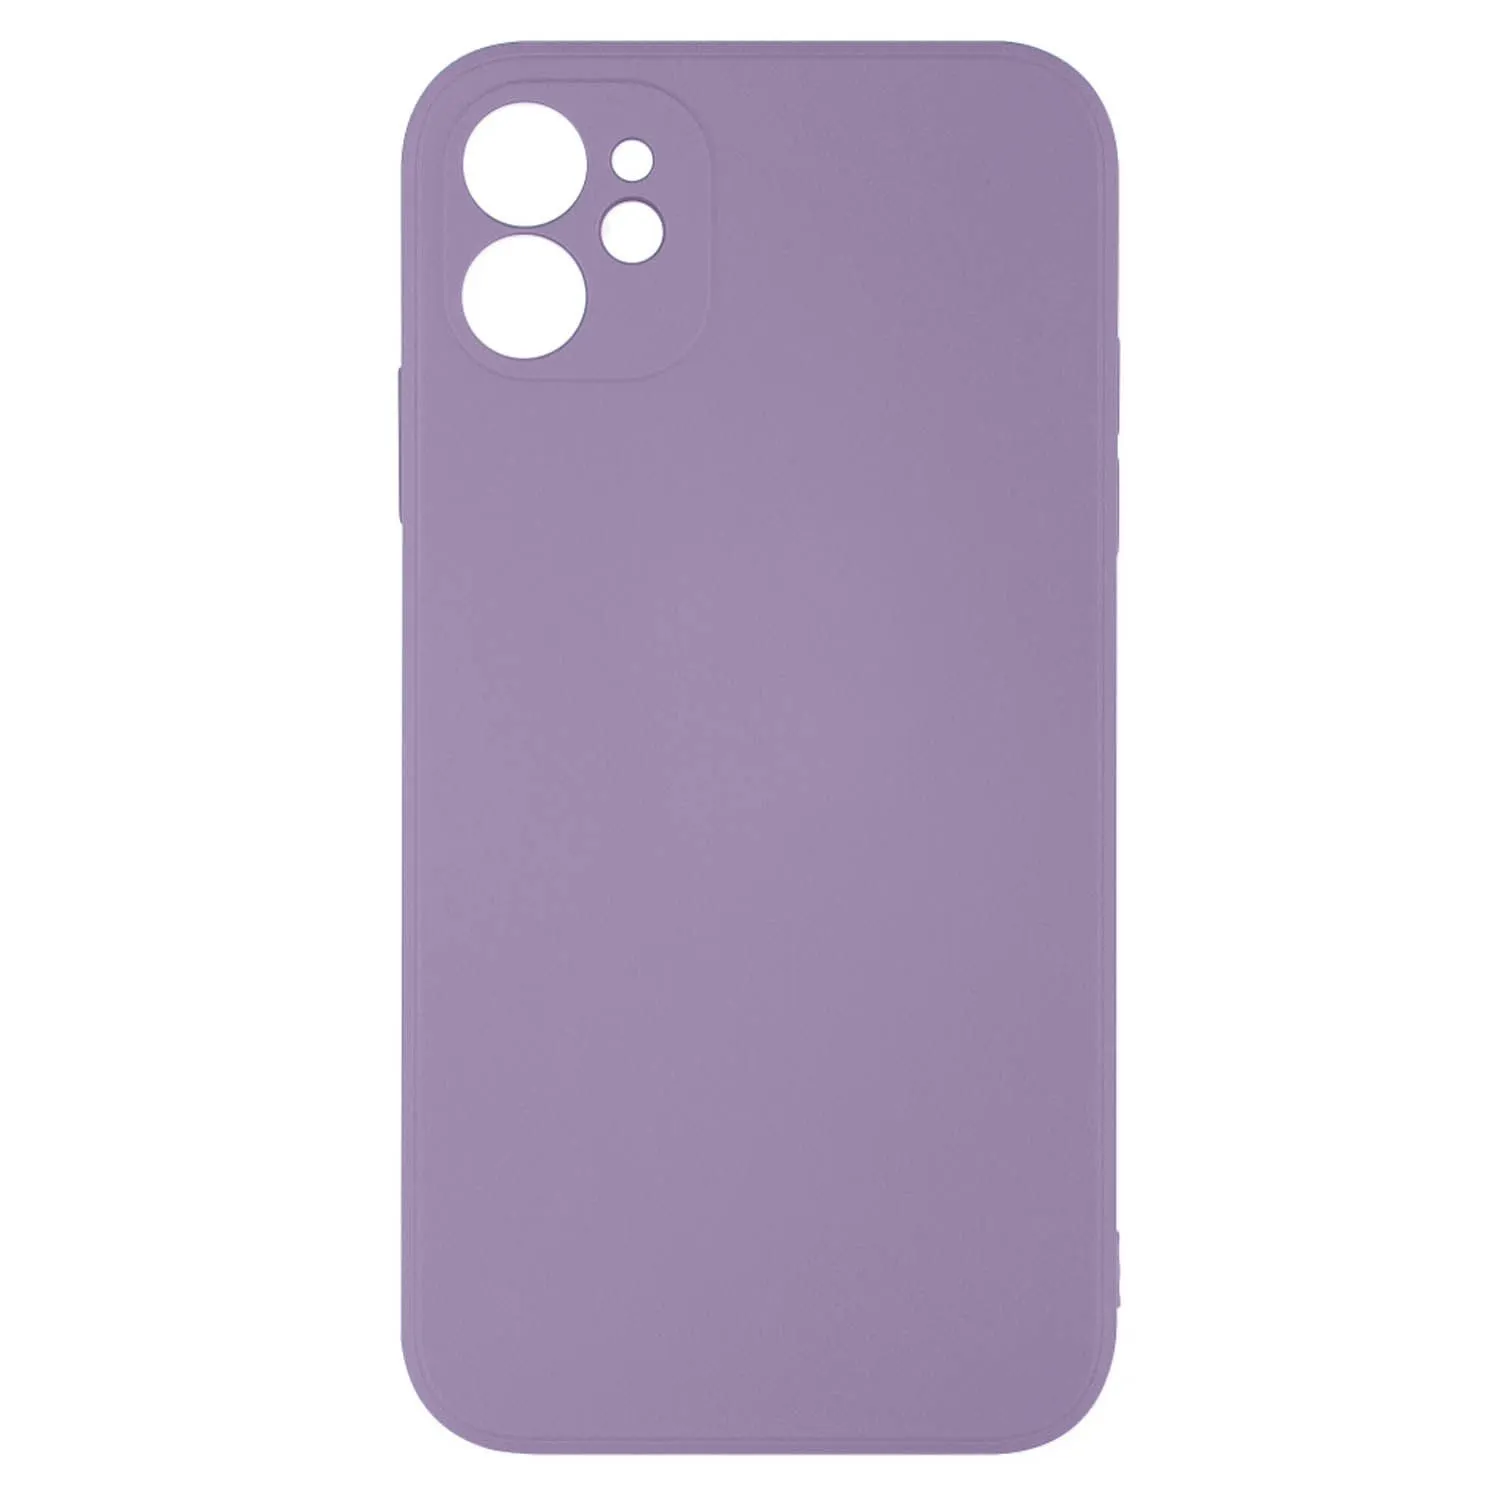 Чехол силиконовый с защитой камеры для Apple iPhone 11 (пурпурный)